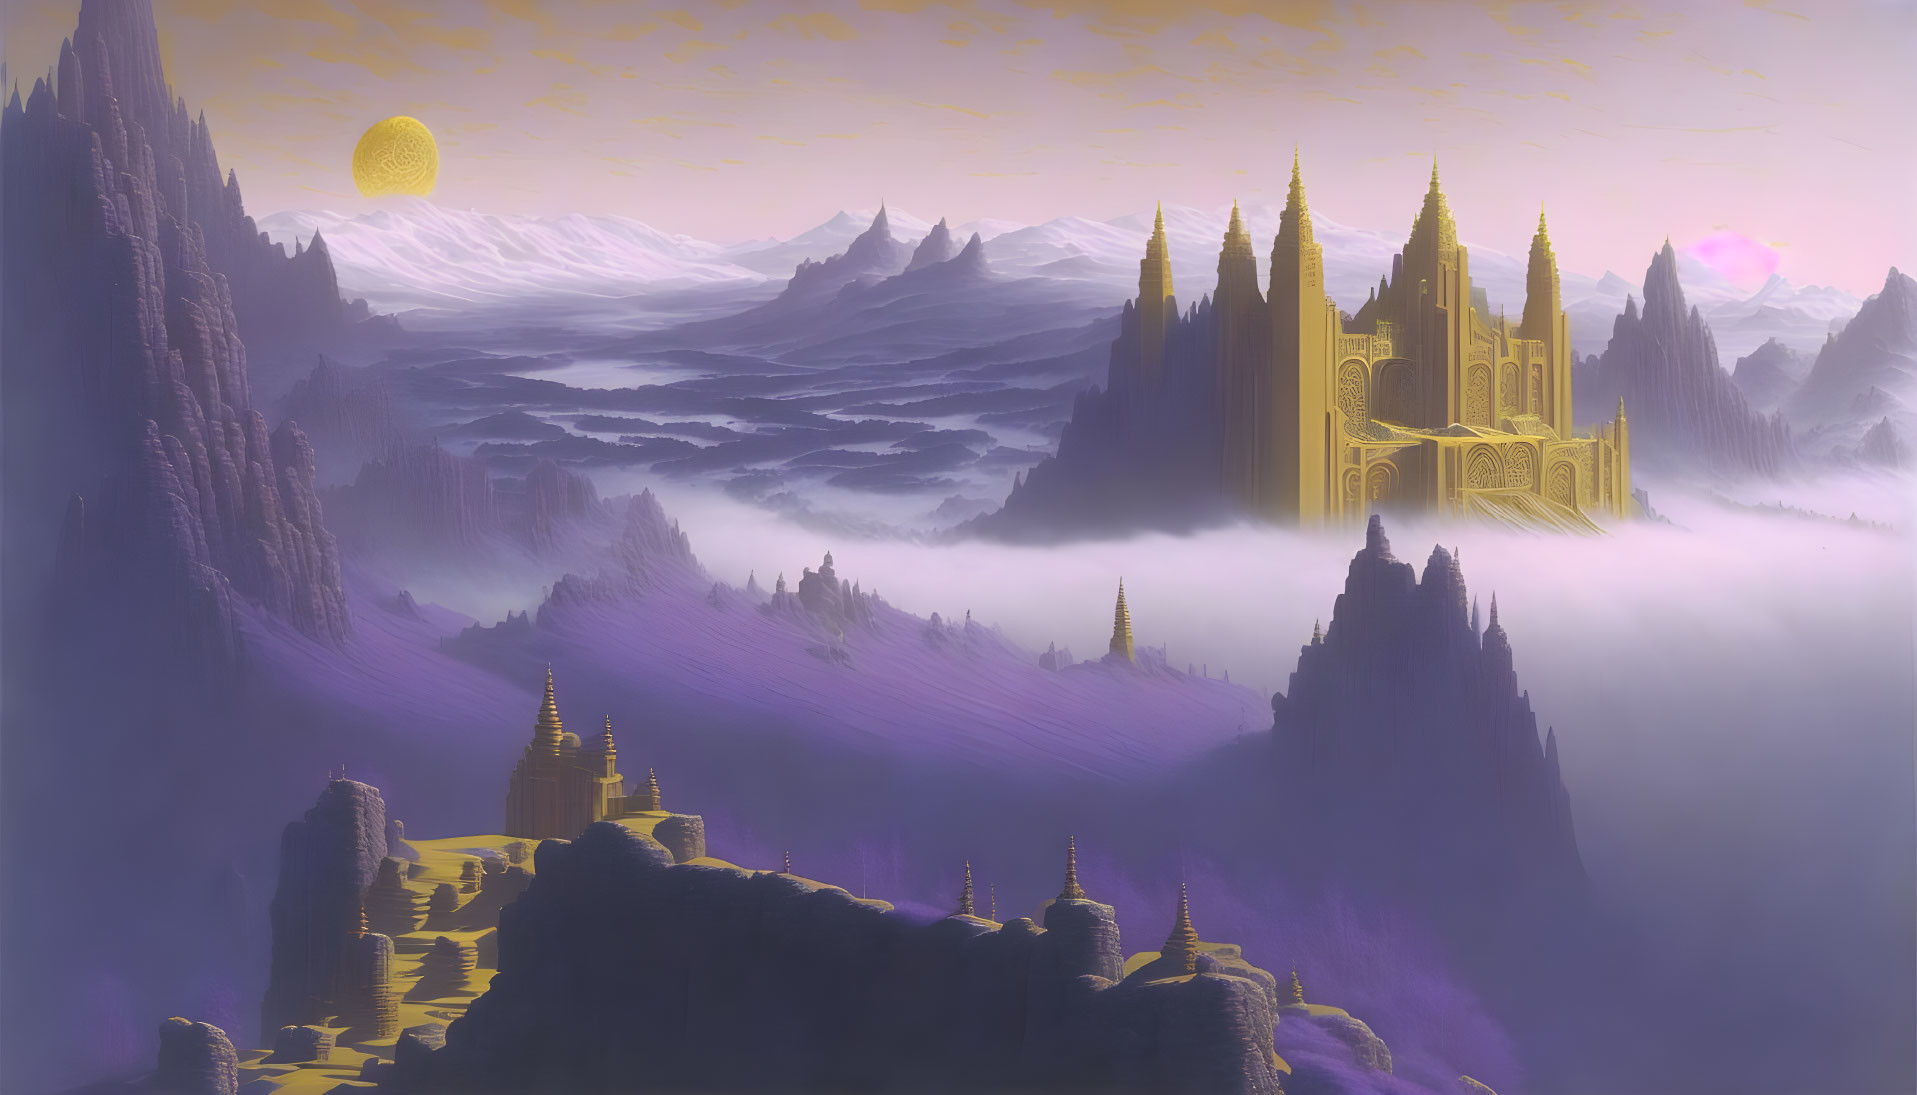 Golden castle on misty mountain peak in fantasy landscape